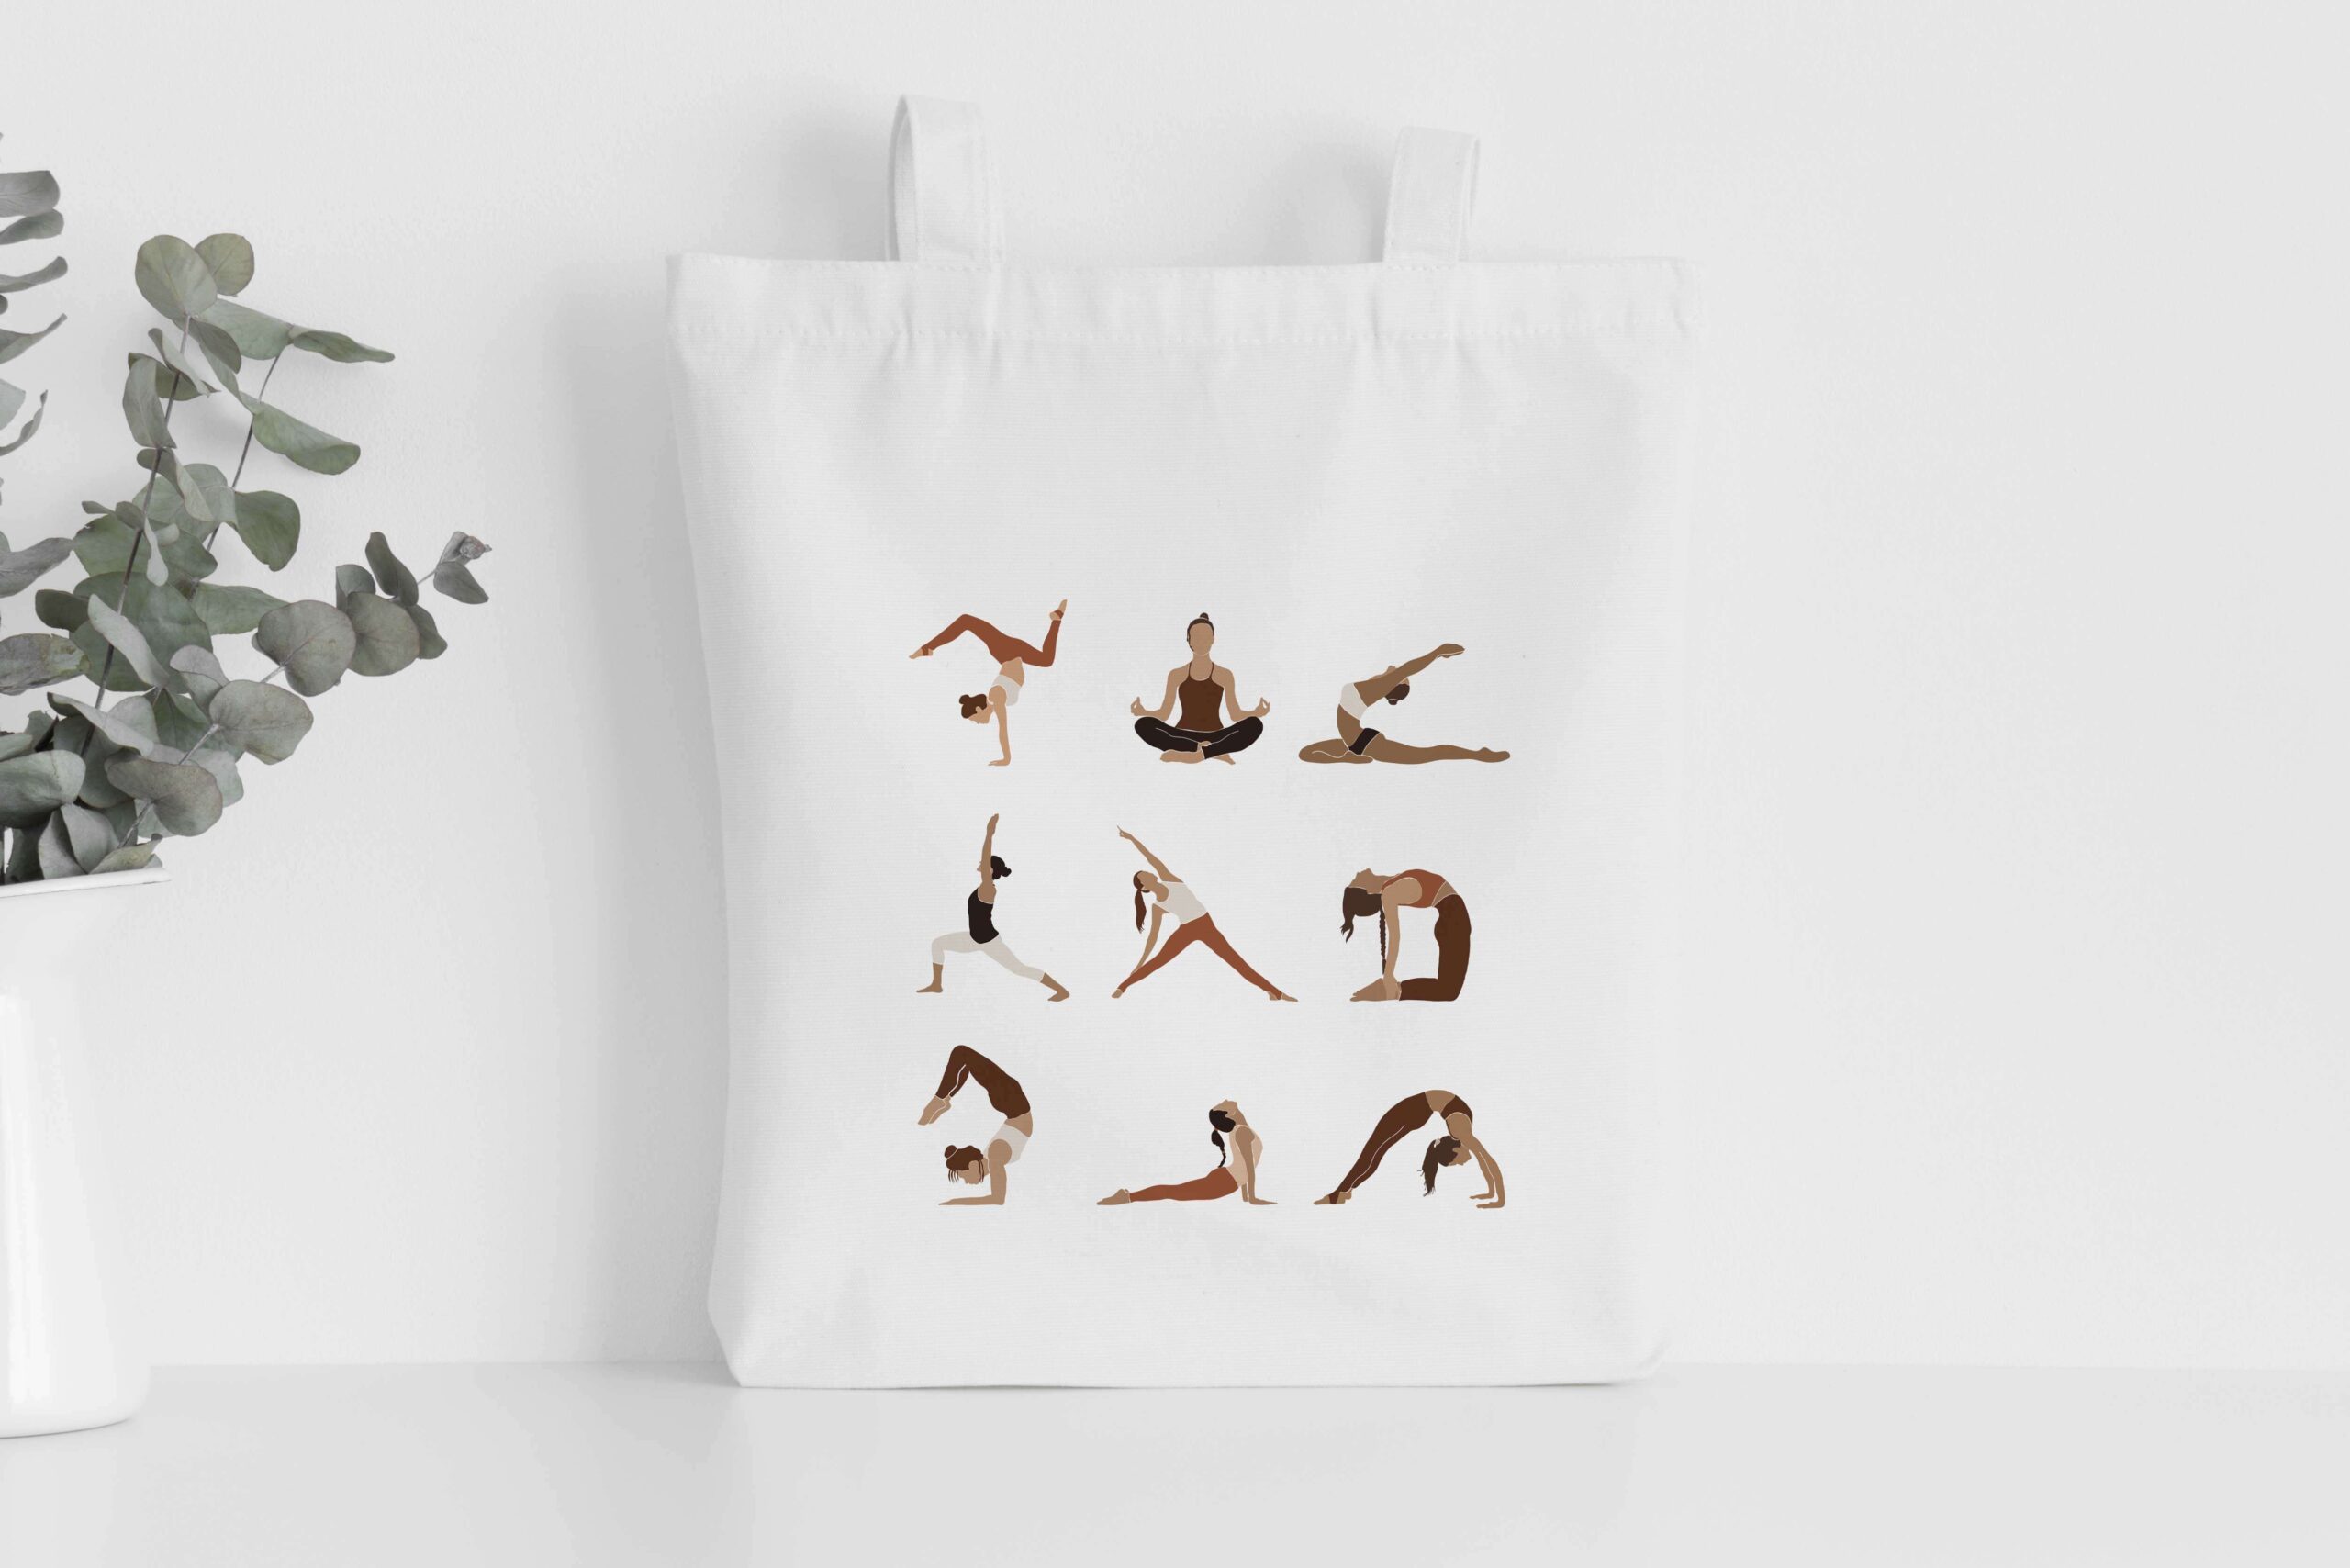 Yoga Pose' Tote Shopping Bag for Life (BG00070202)